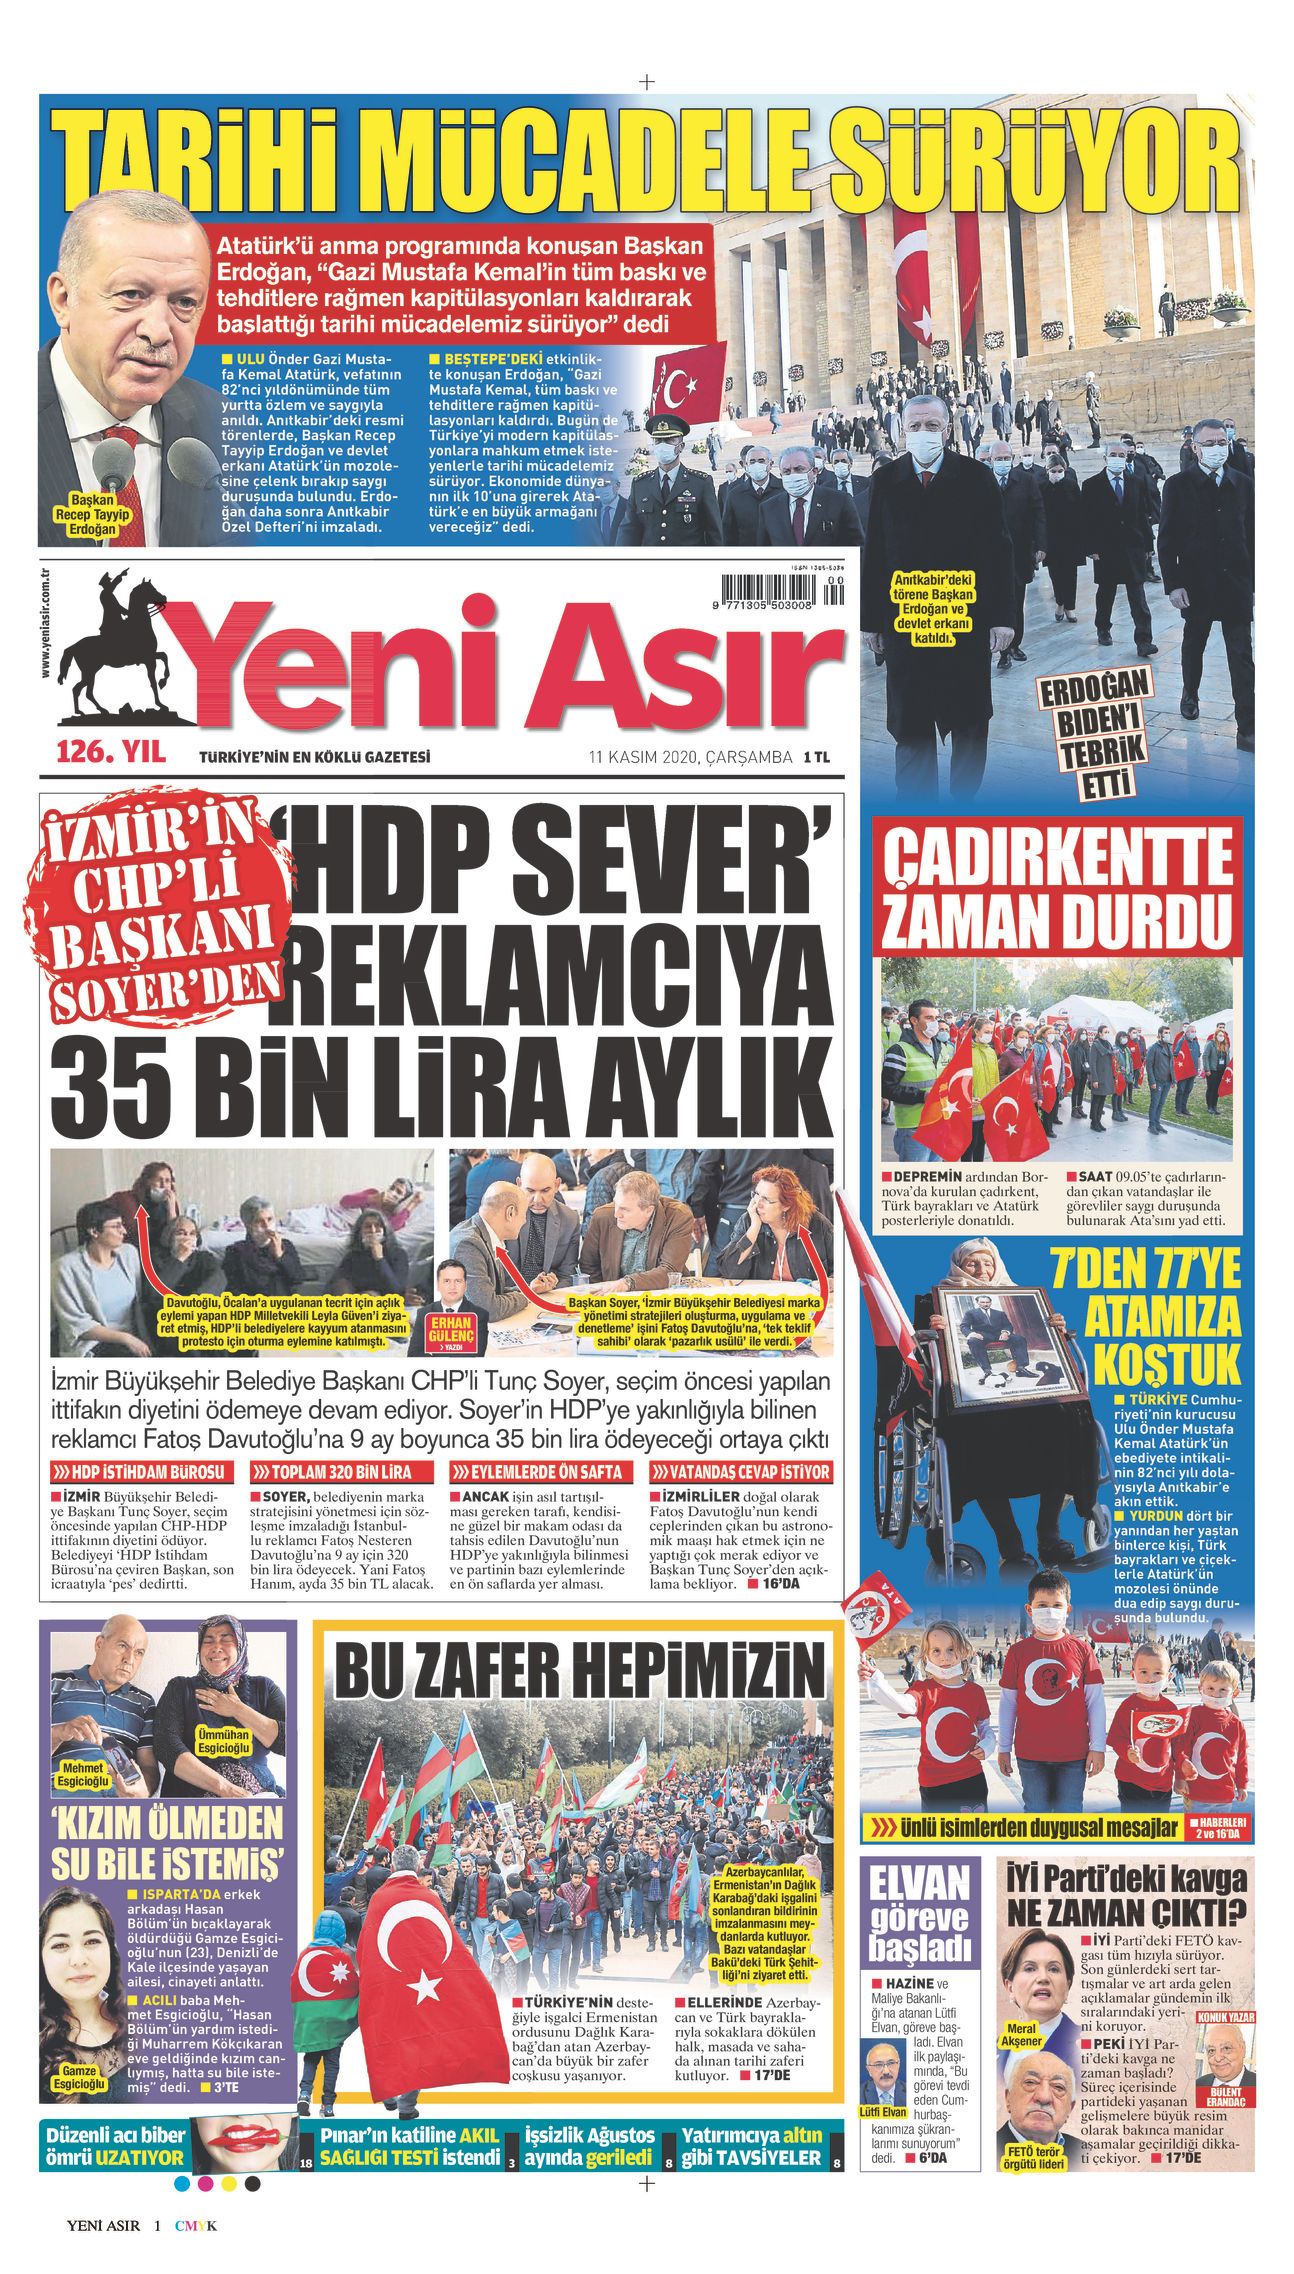 Tunç Soyer’den HDP sever reklamcıya 35 bin TL aylık ödeme